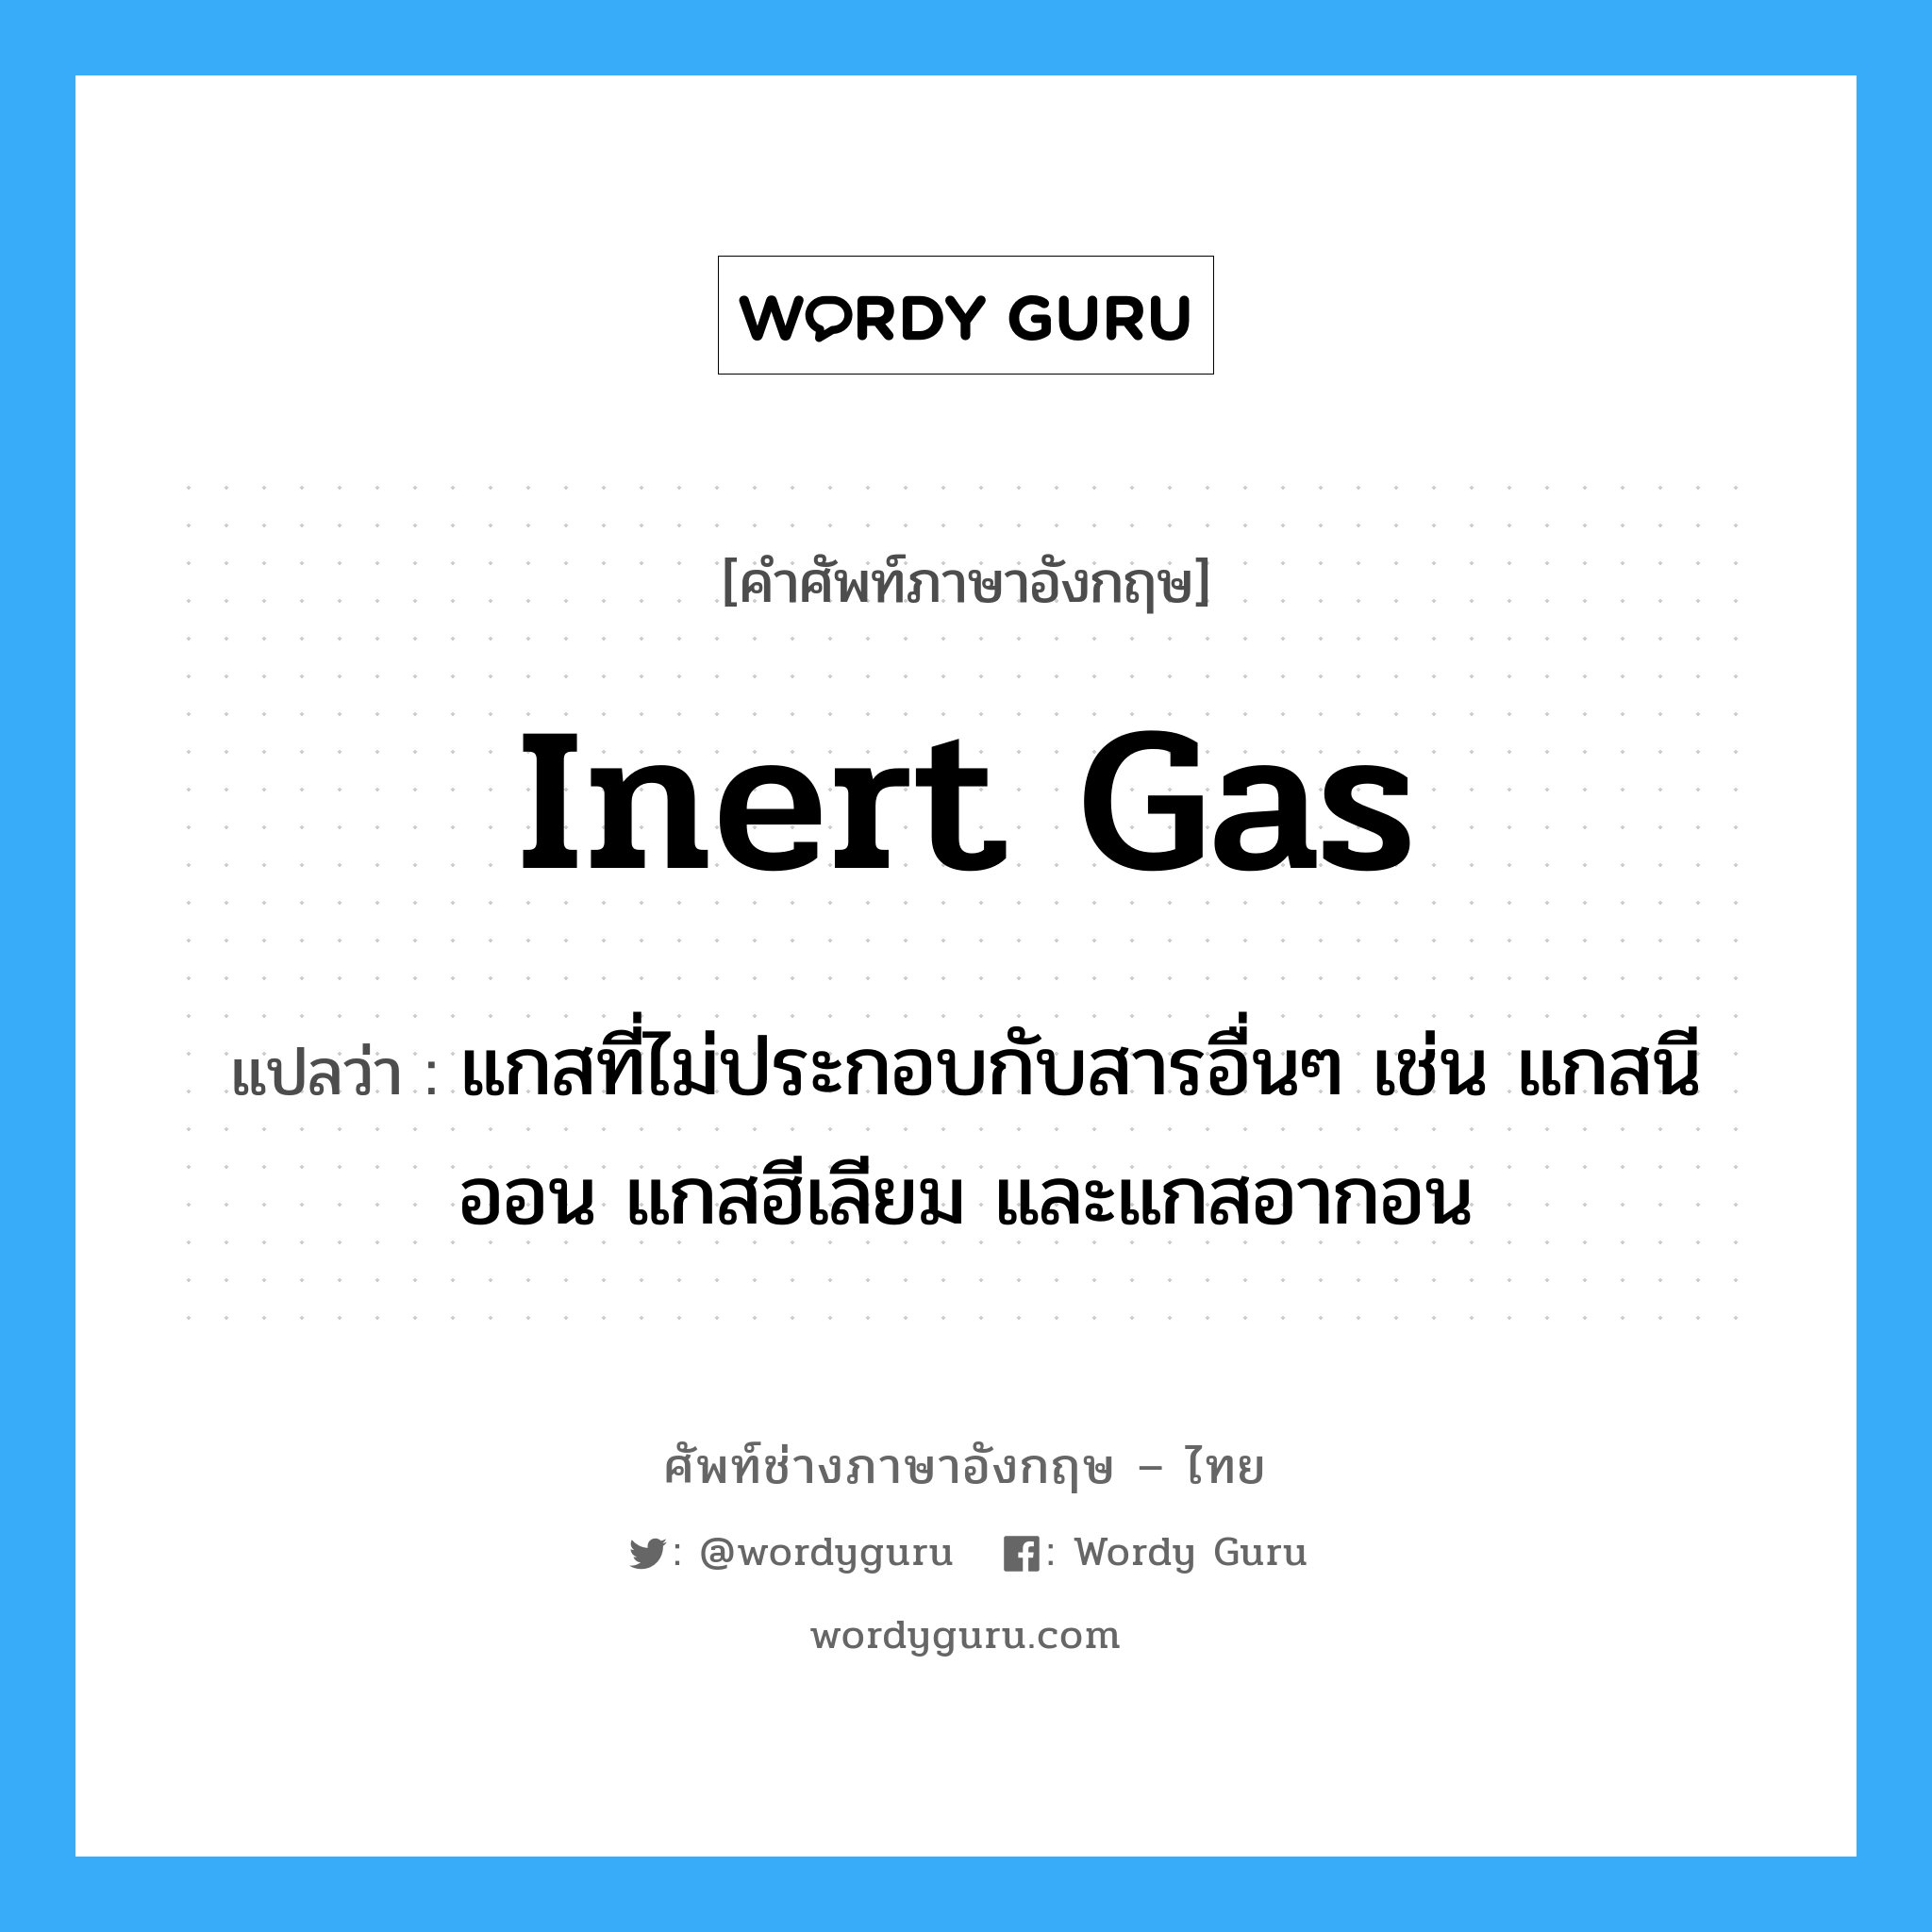 inert gas แปลว่า?, คำศัพท์ช่างภาษาอังกฤษ - ไทย inert gas คำศัพท์ภาษาอังกฤษ inert gas แปลว่า แกสที่ไม่ประกอบกับสารอื่นๆ เช่น แกสนีออน แกสฮีเลียม และแกสอากอน